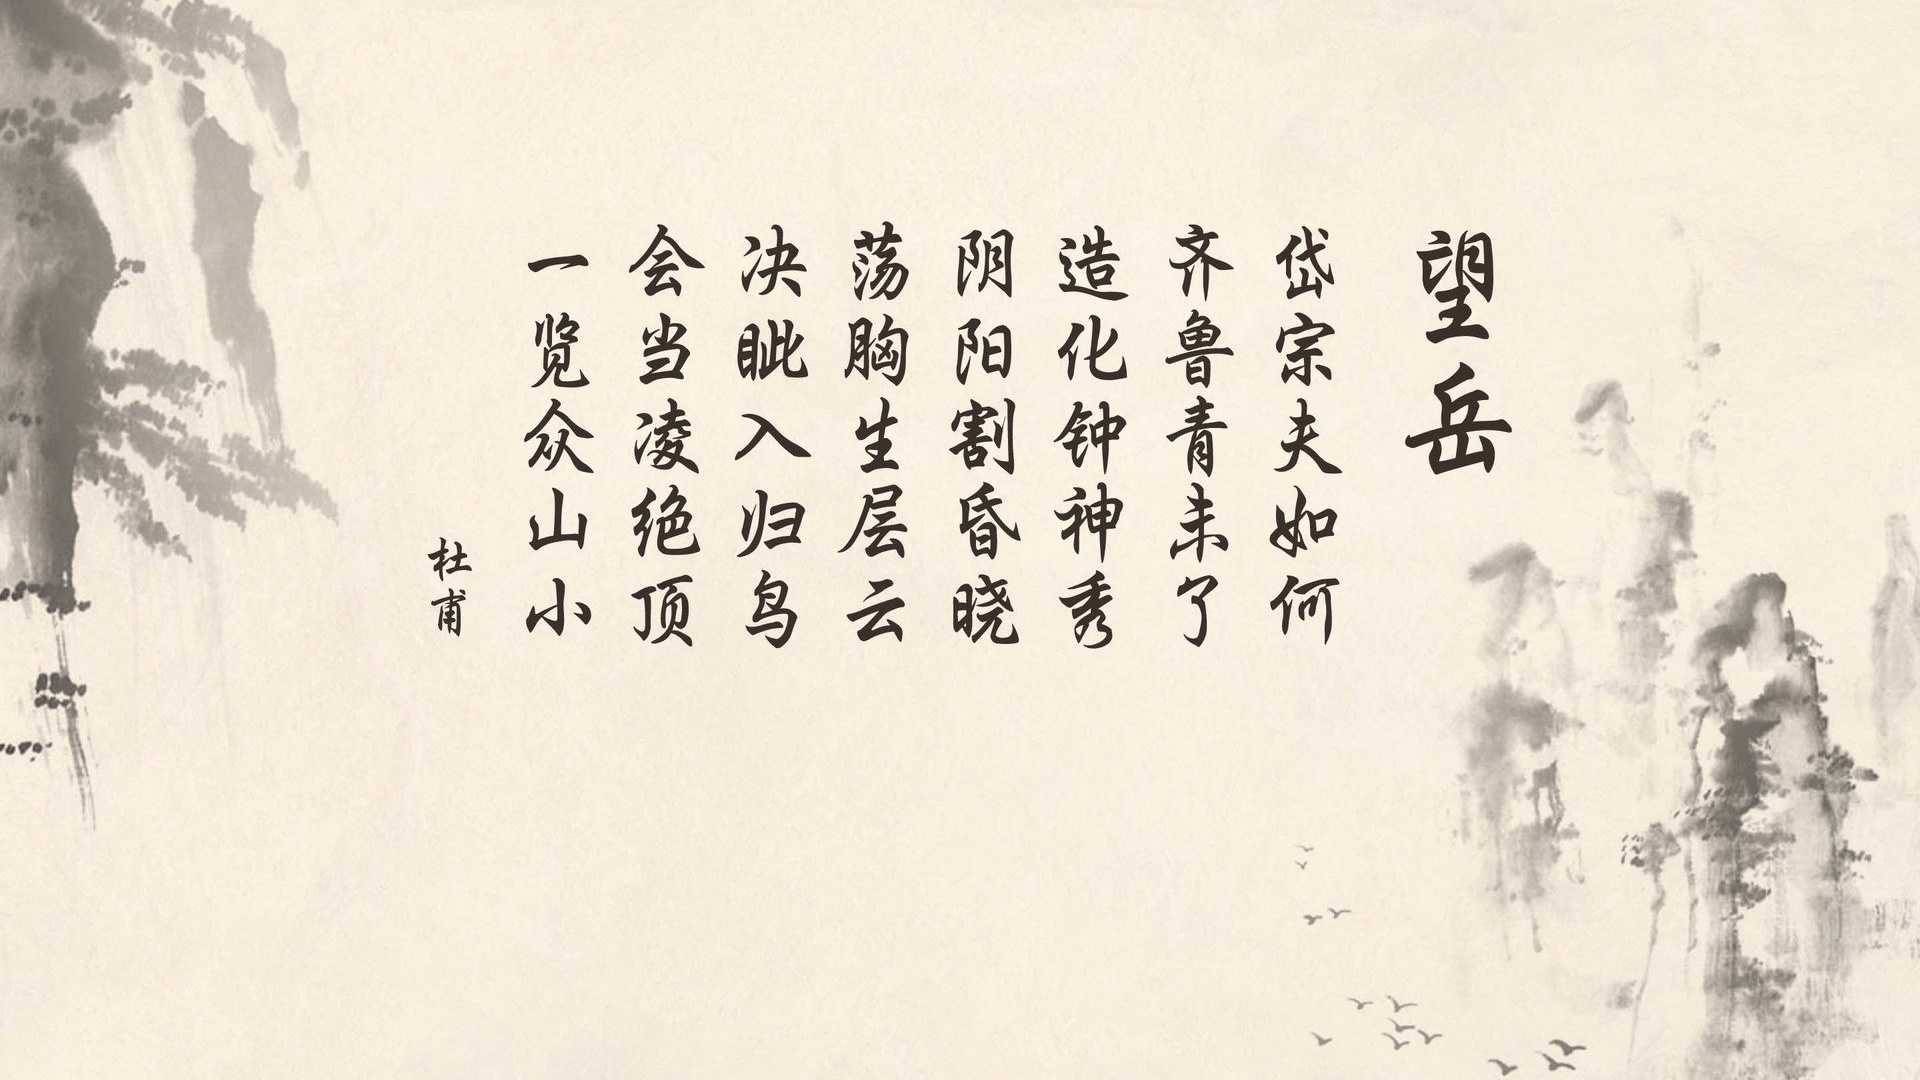 文字 论语 中国风 文字控壁纸(其他静态壁纸) - 静态壁纸下载 - 元气壁纸